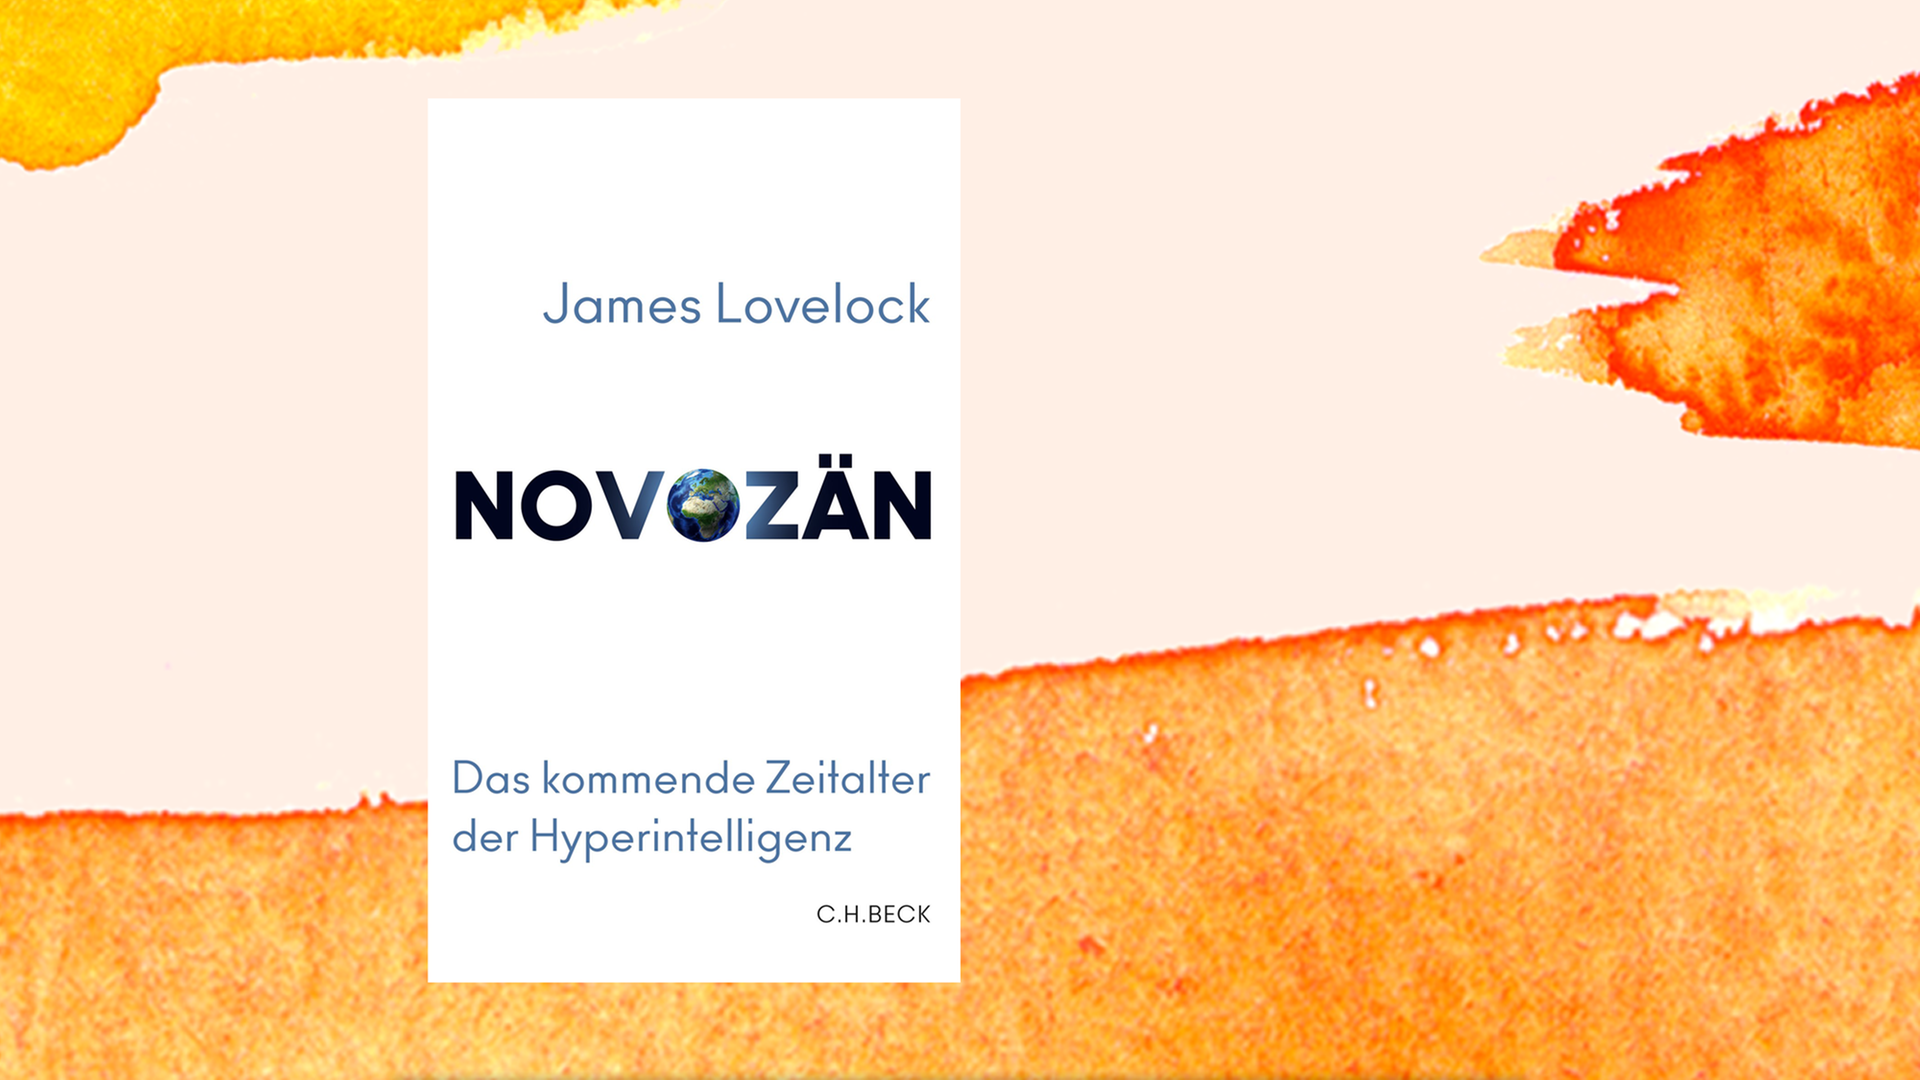 Zu sehen ist das Cover des Buches "Novozän" von James Lovelock.